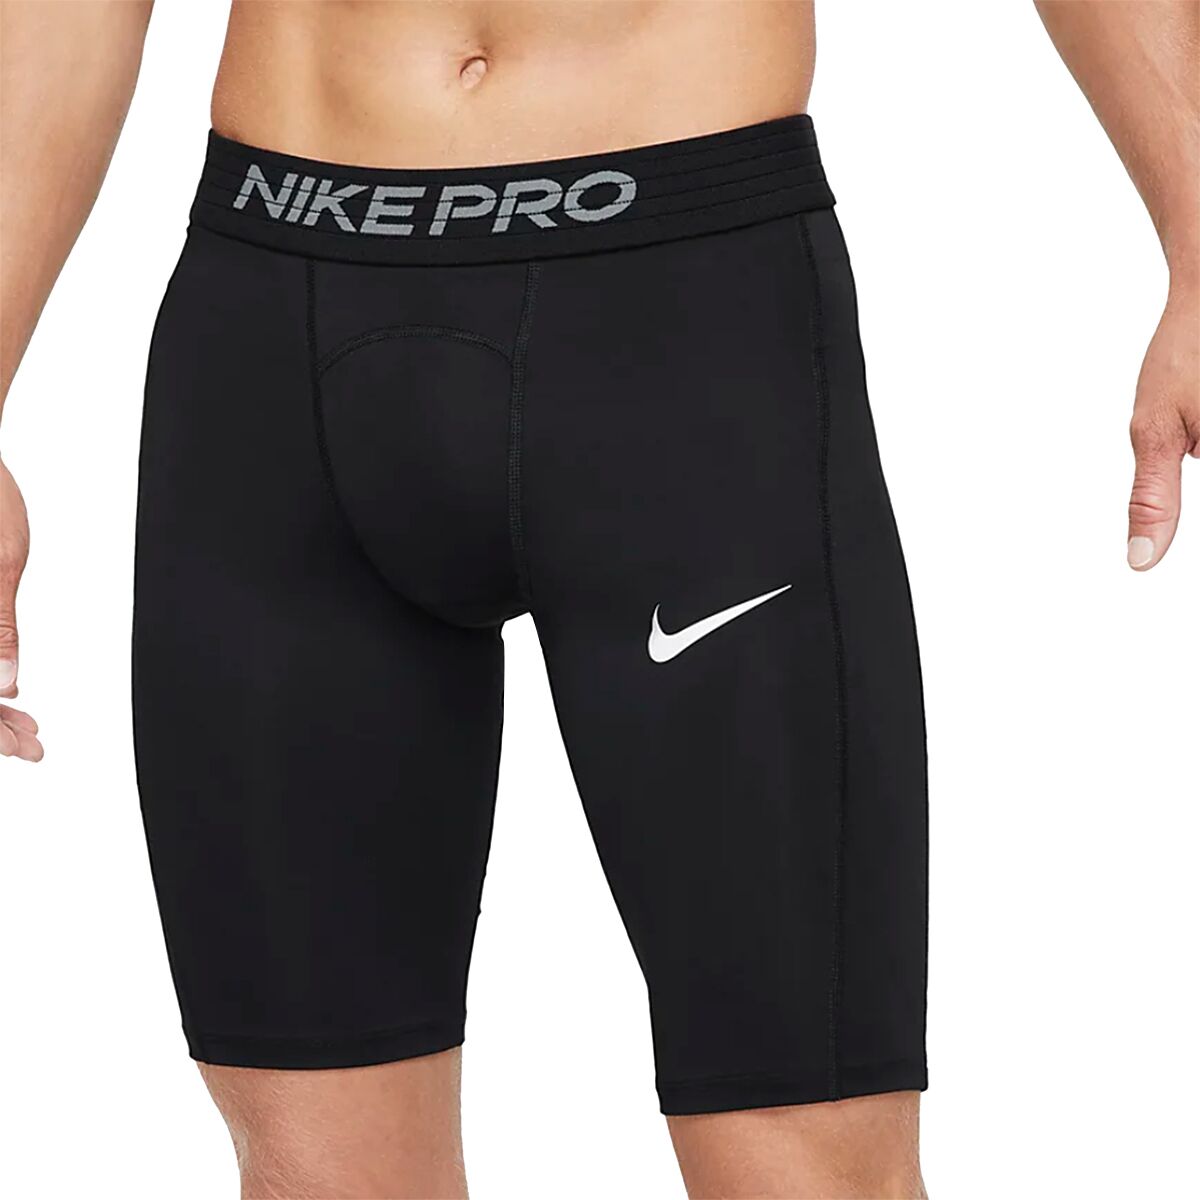 Nike Pro Short - Men's